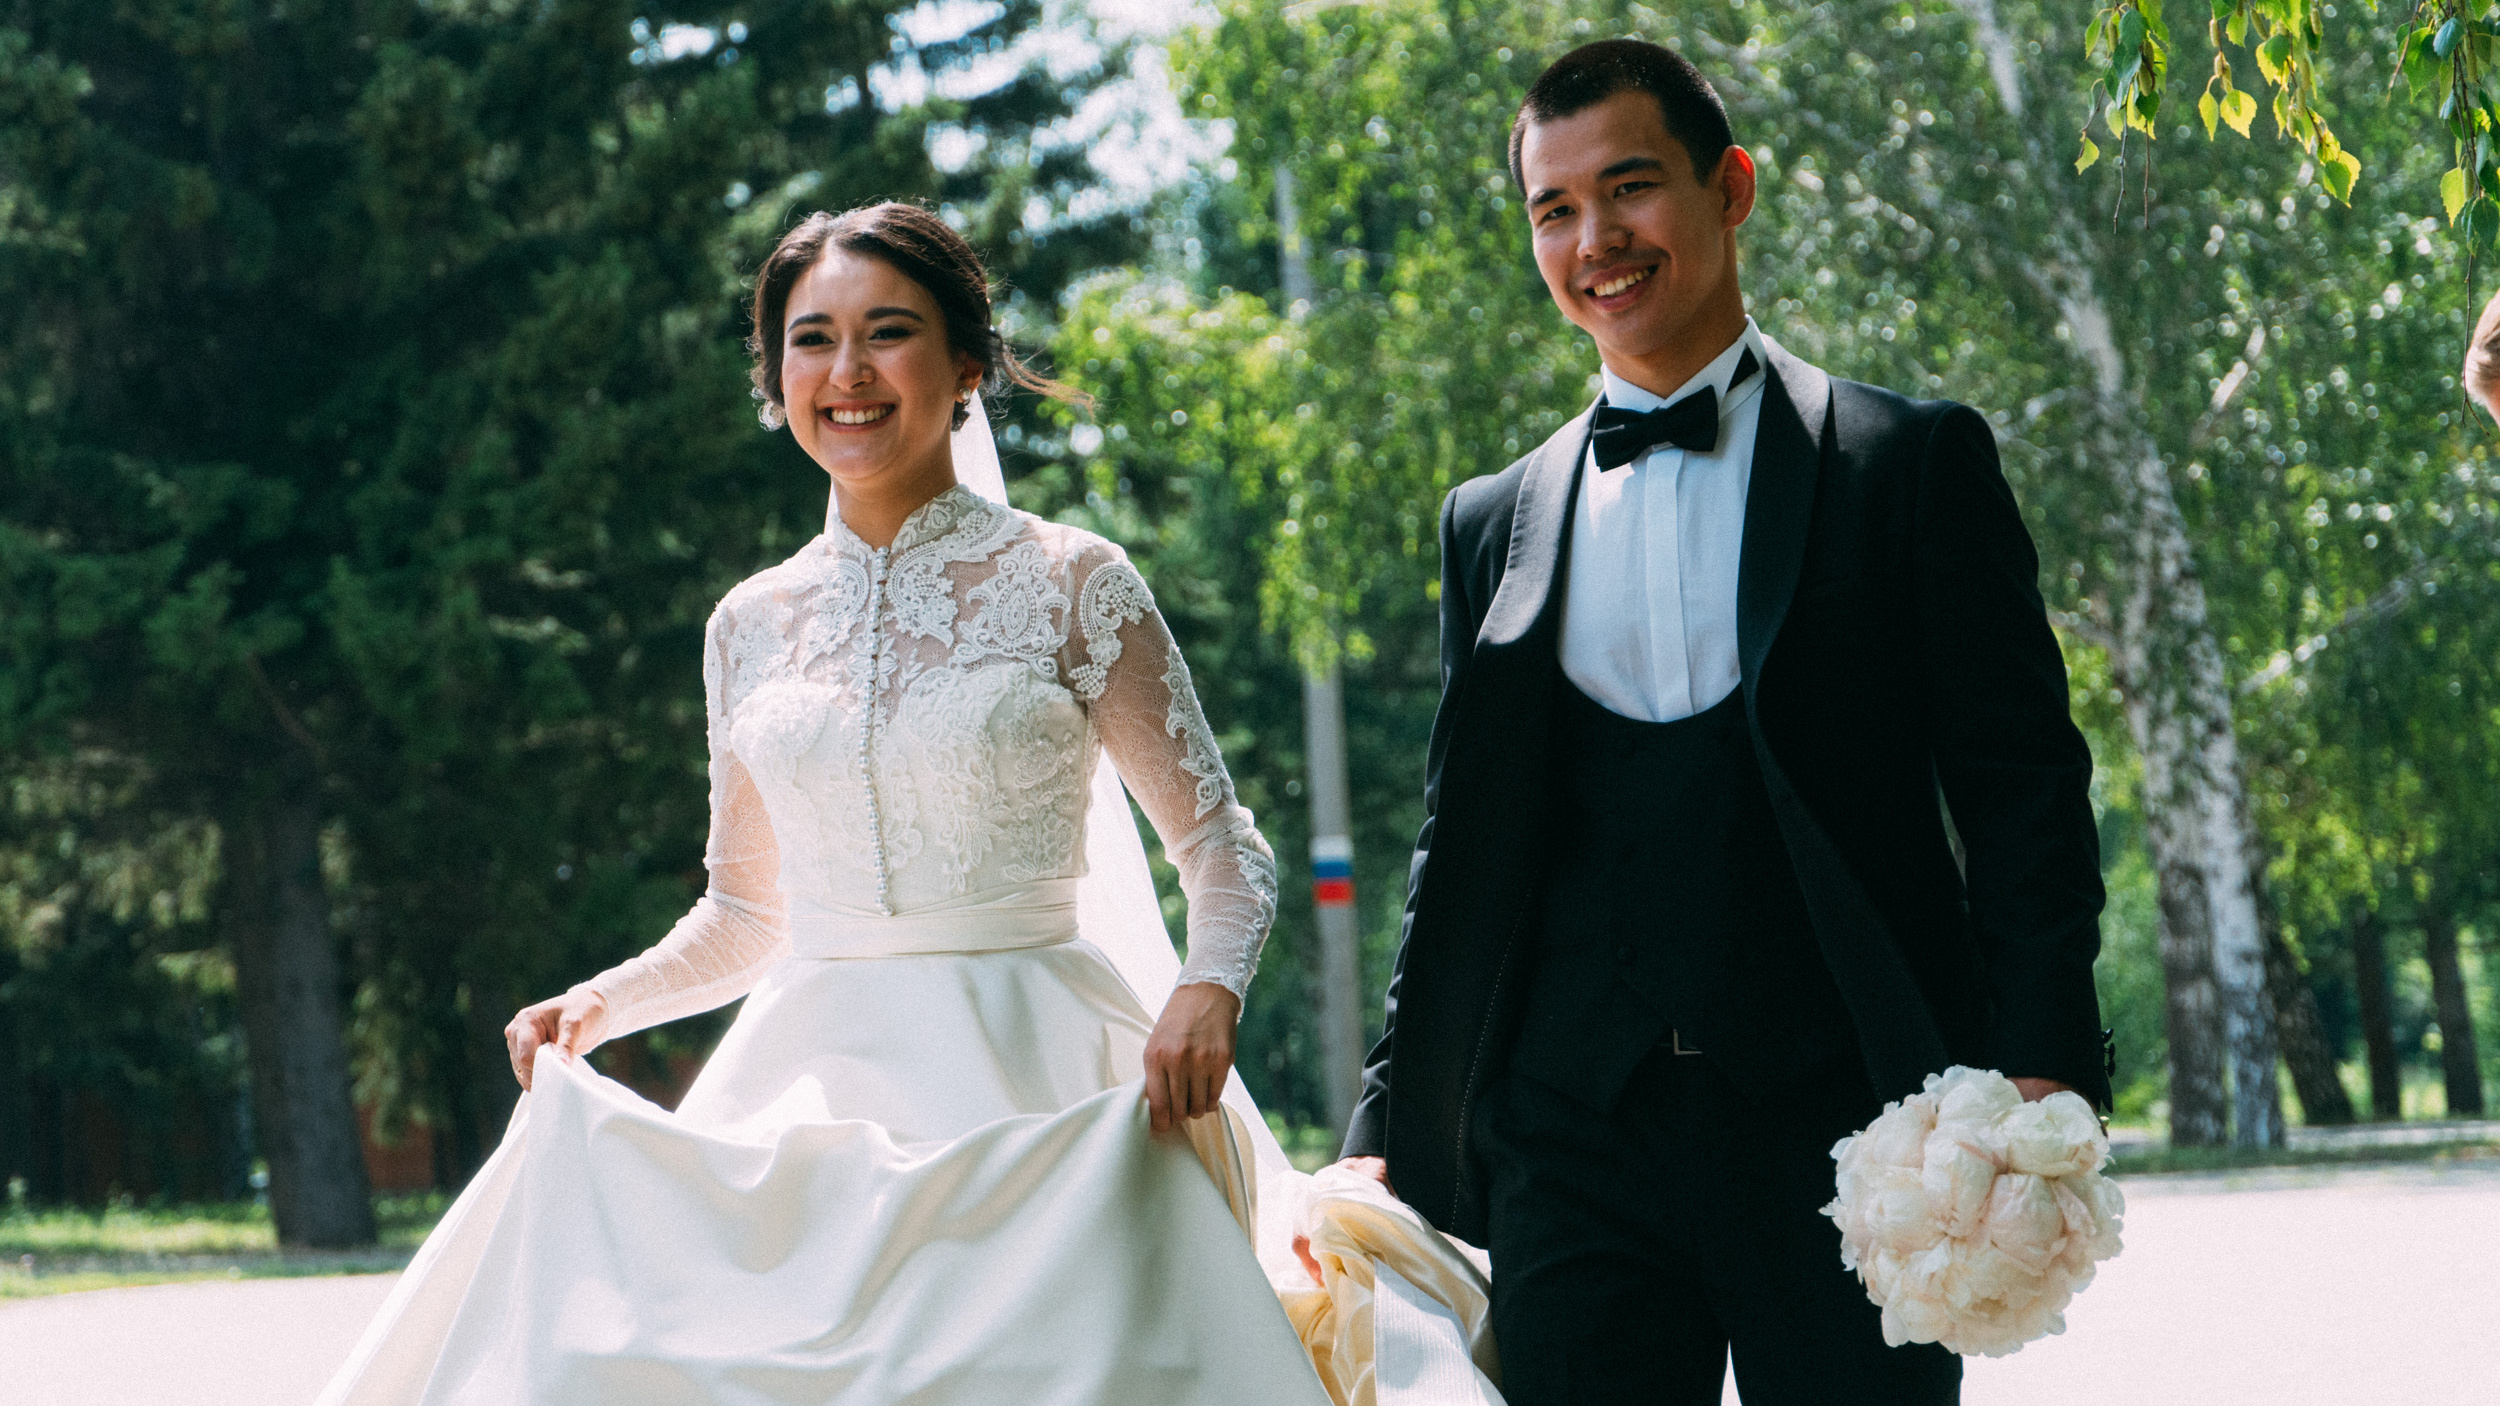 Обряды, дегустация блюд, регистрация брака: в Югре пройдет фестиваль национальных свадеб